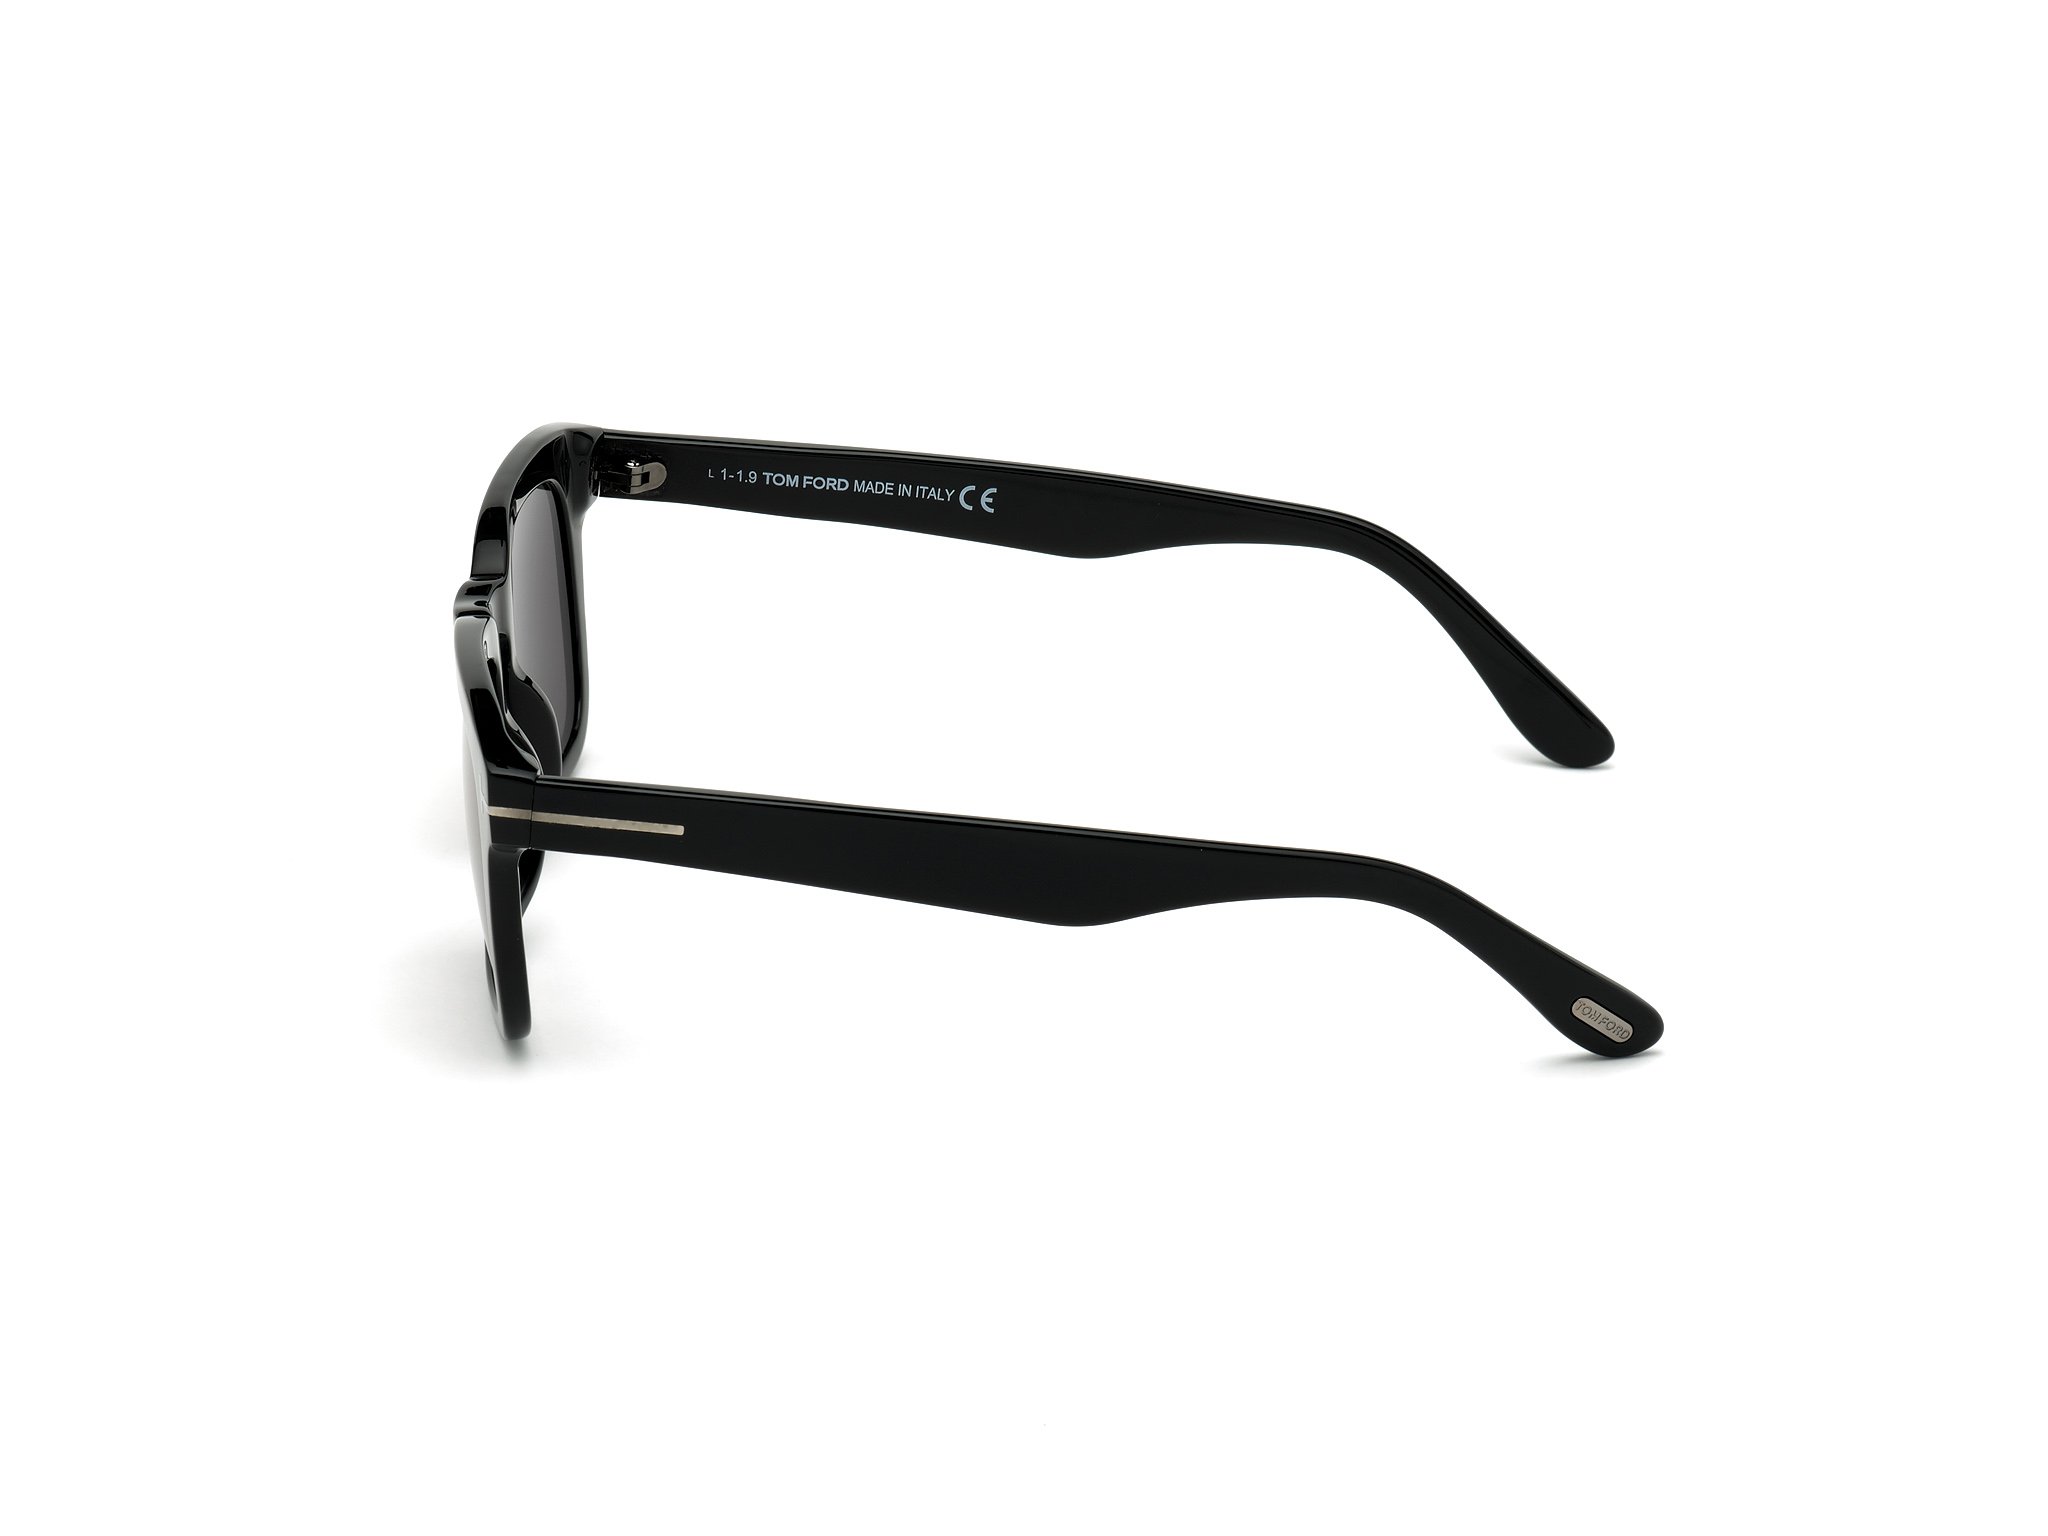 Das Bild zeigt die Sonnenbrille DAX FT0751 von der Marke Tom Ford in  schwarz seitlich